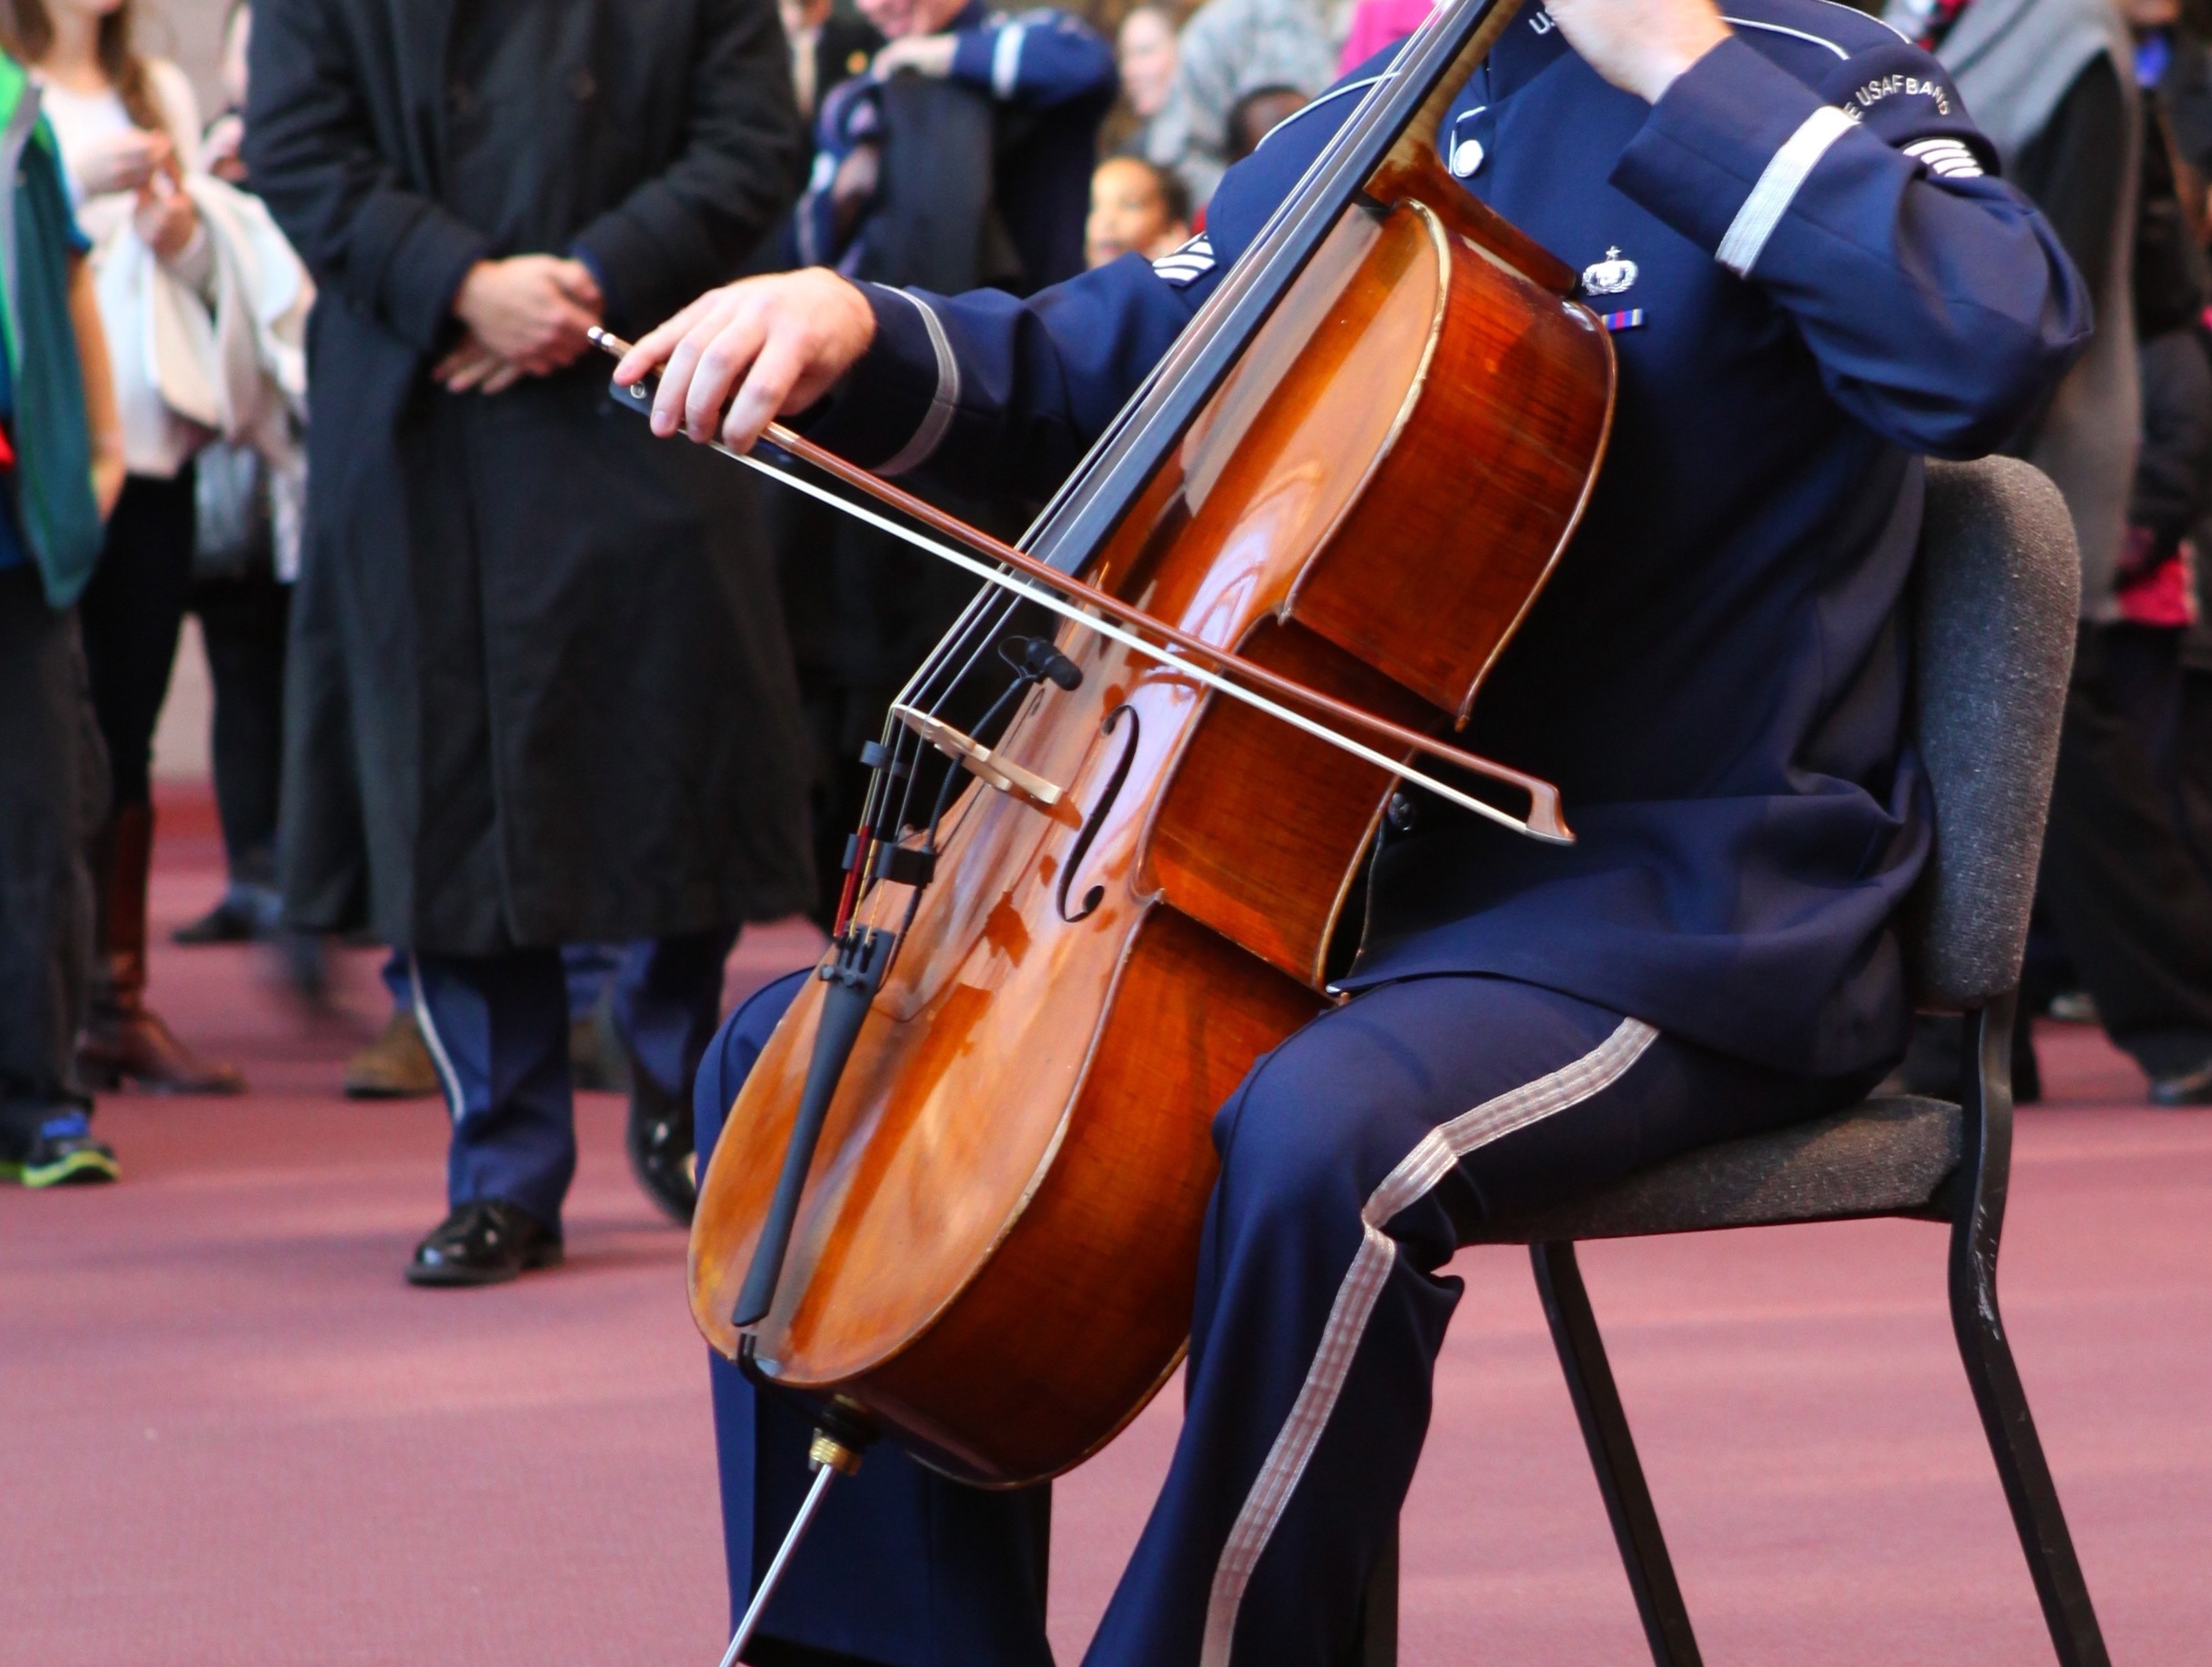 A member of the Air Force Band plays a cello. (Air Force photo / Tara Islas)